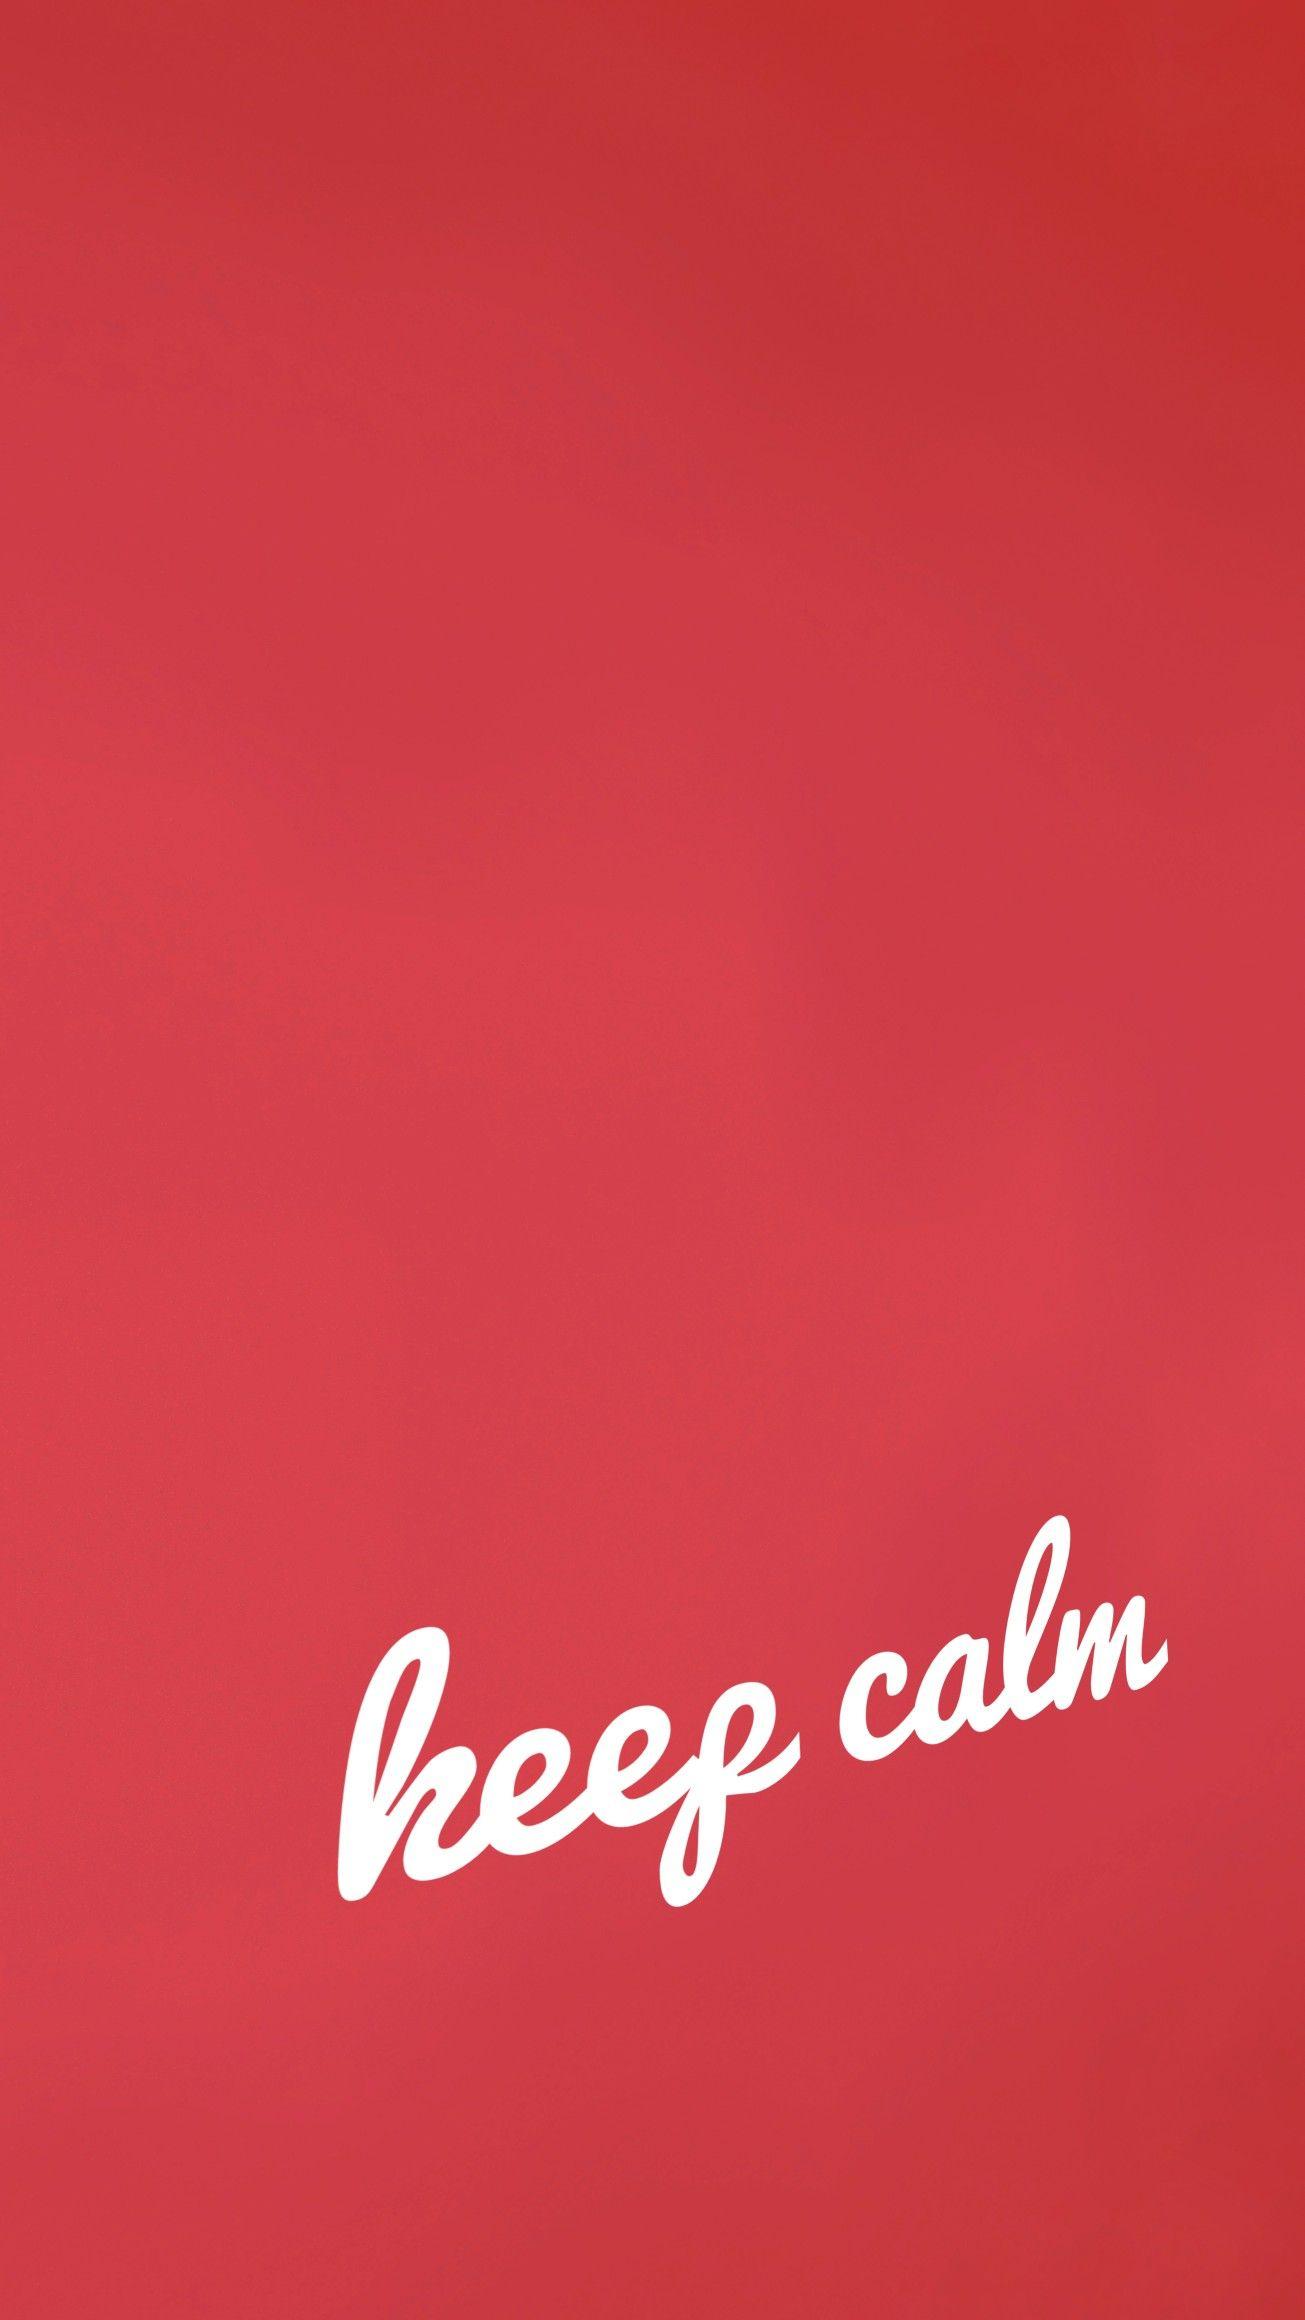 Keep Calm Wallpaper #wallpaper #screen #backtoschool #phone